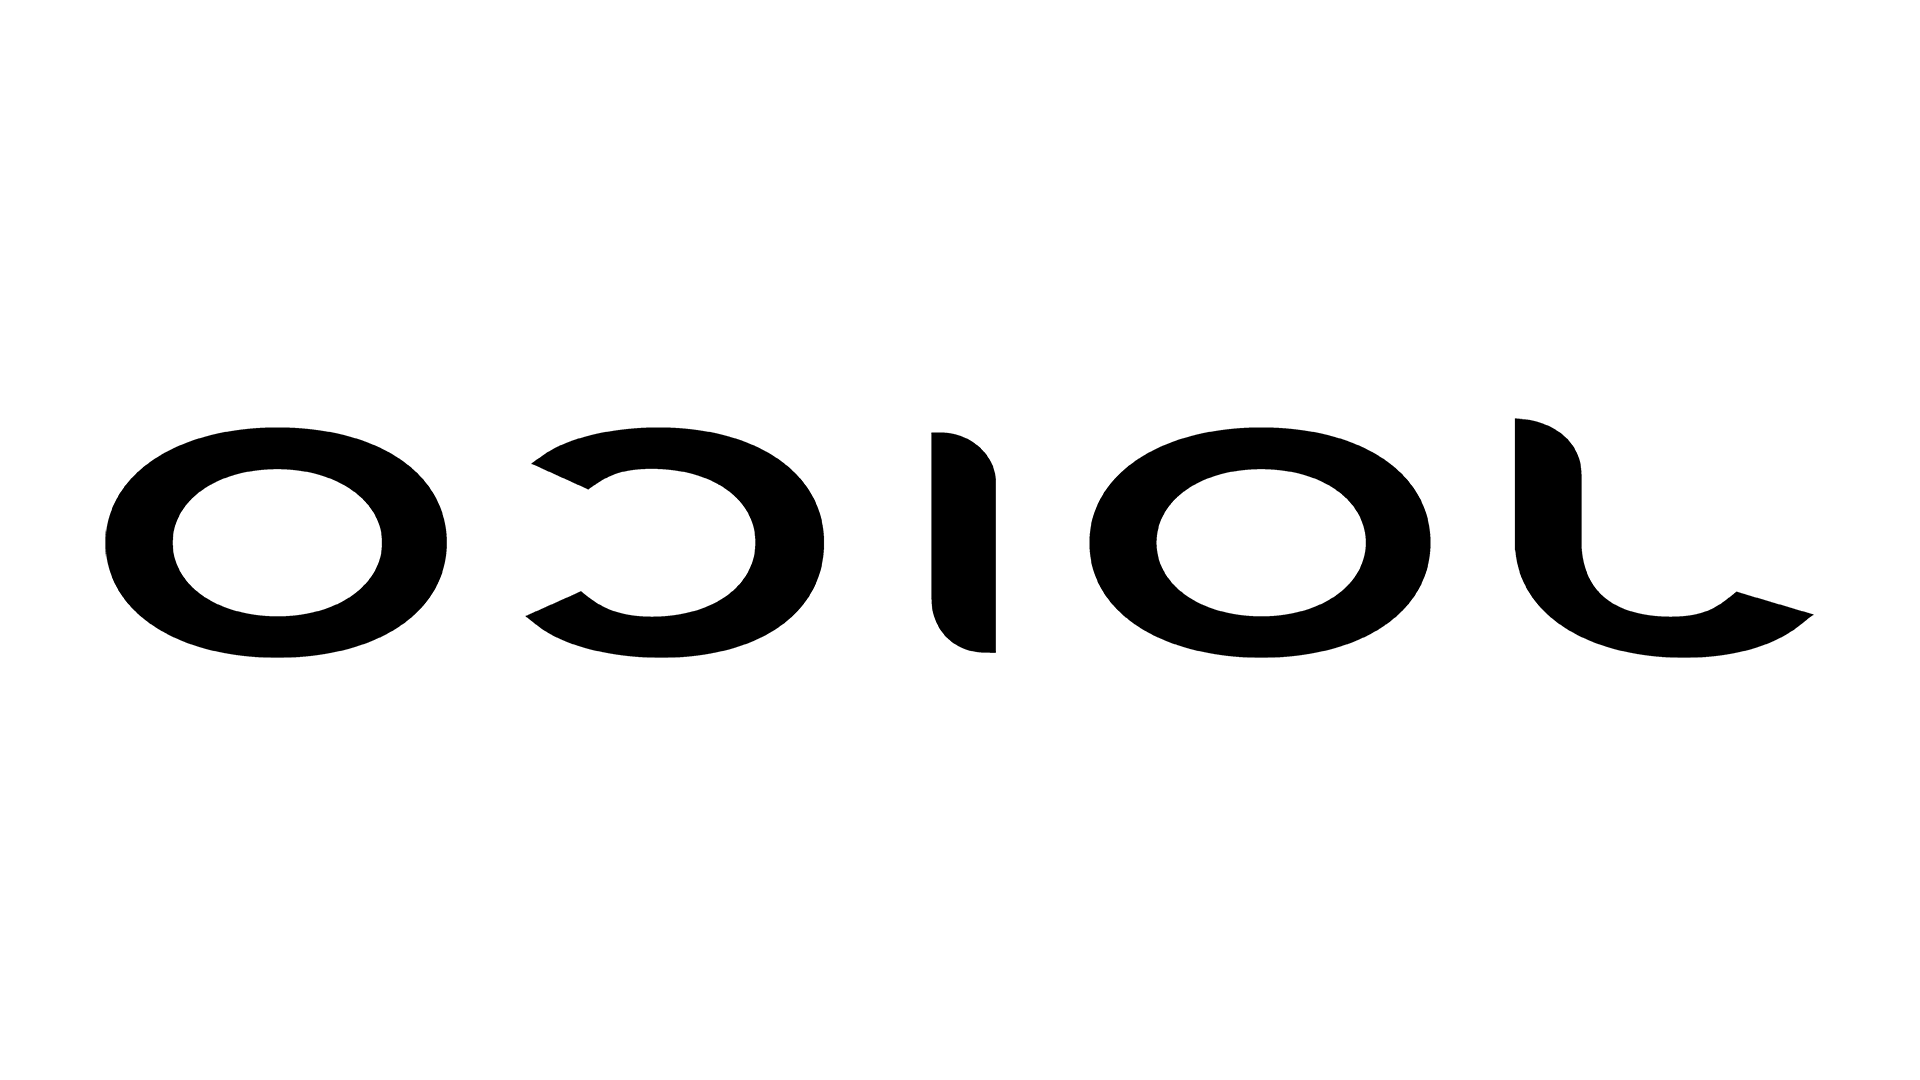 Image of Joico logo